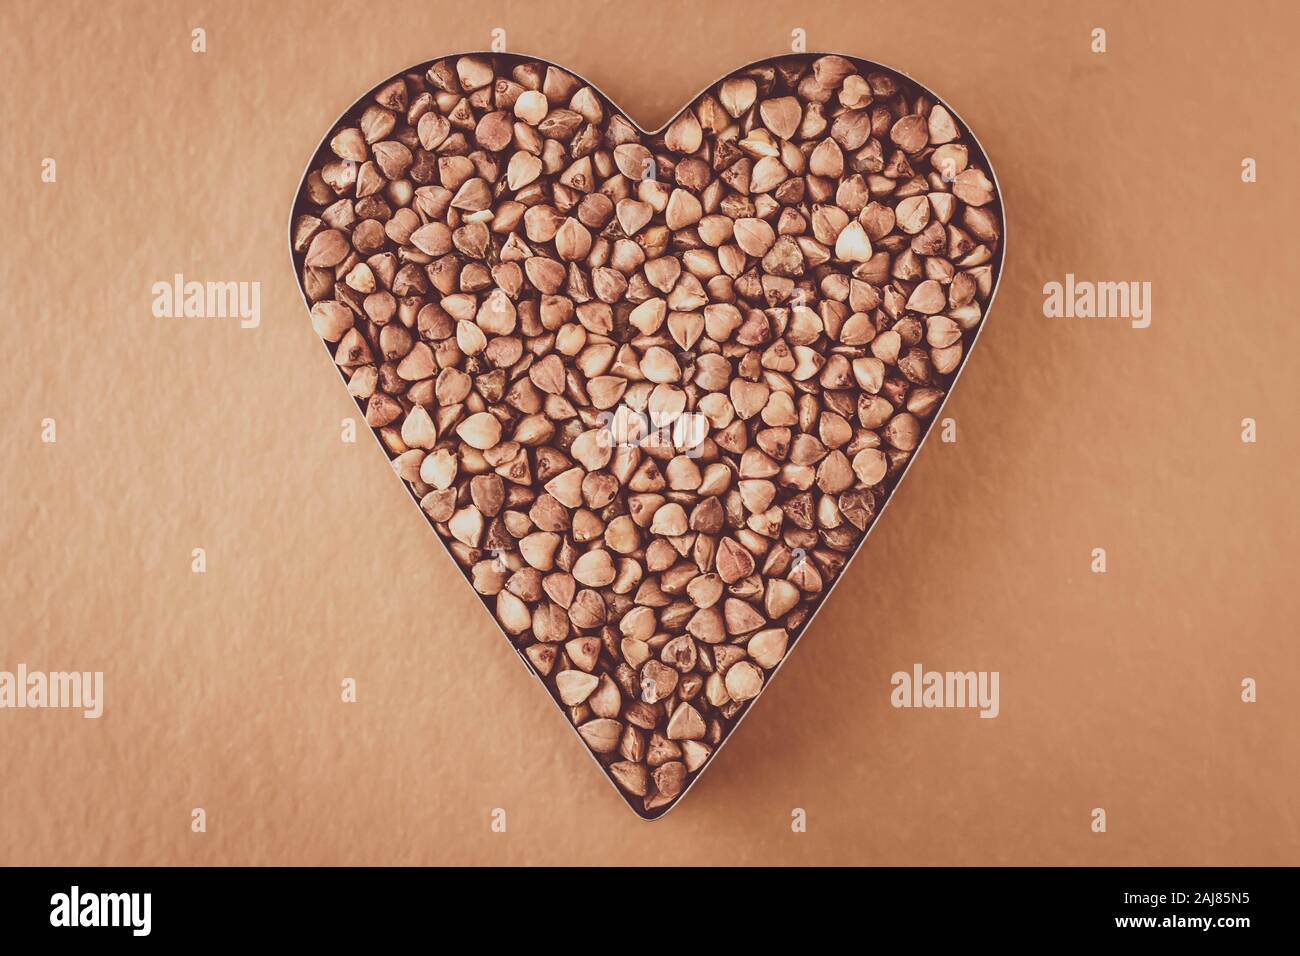 Cumulo di chicchi di grano saraceno su sfondo marrone. A forma di cuore. Grappolo di semi. Dieta carboidrato concept Foto Stock